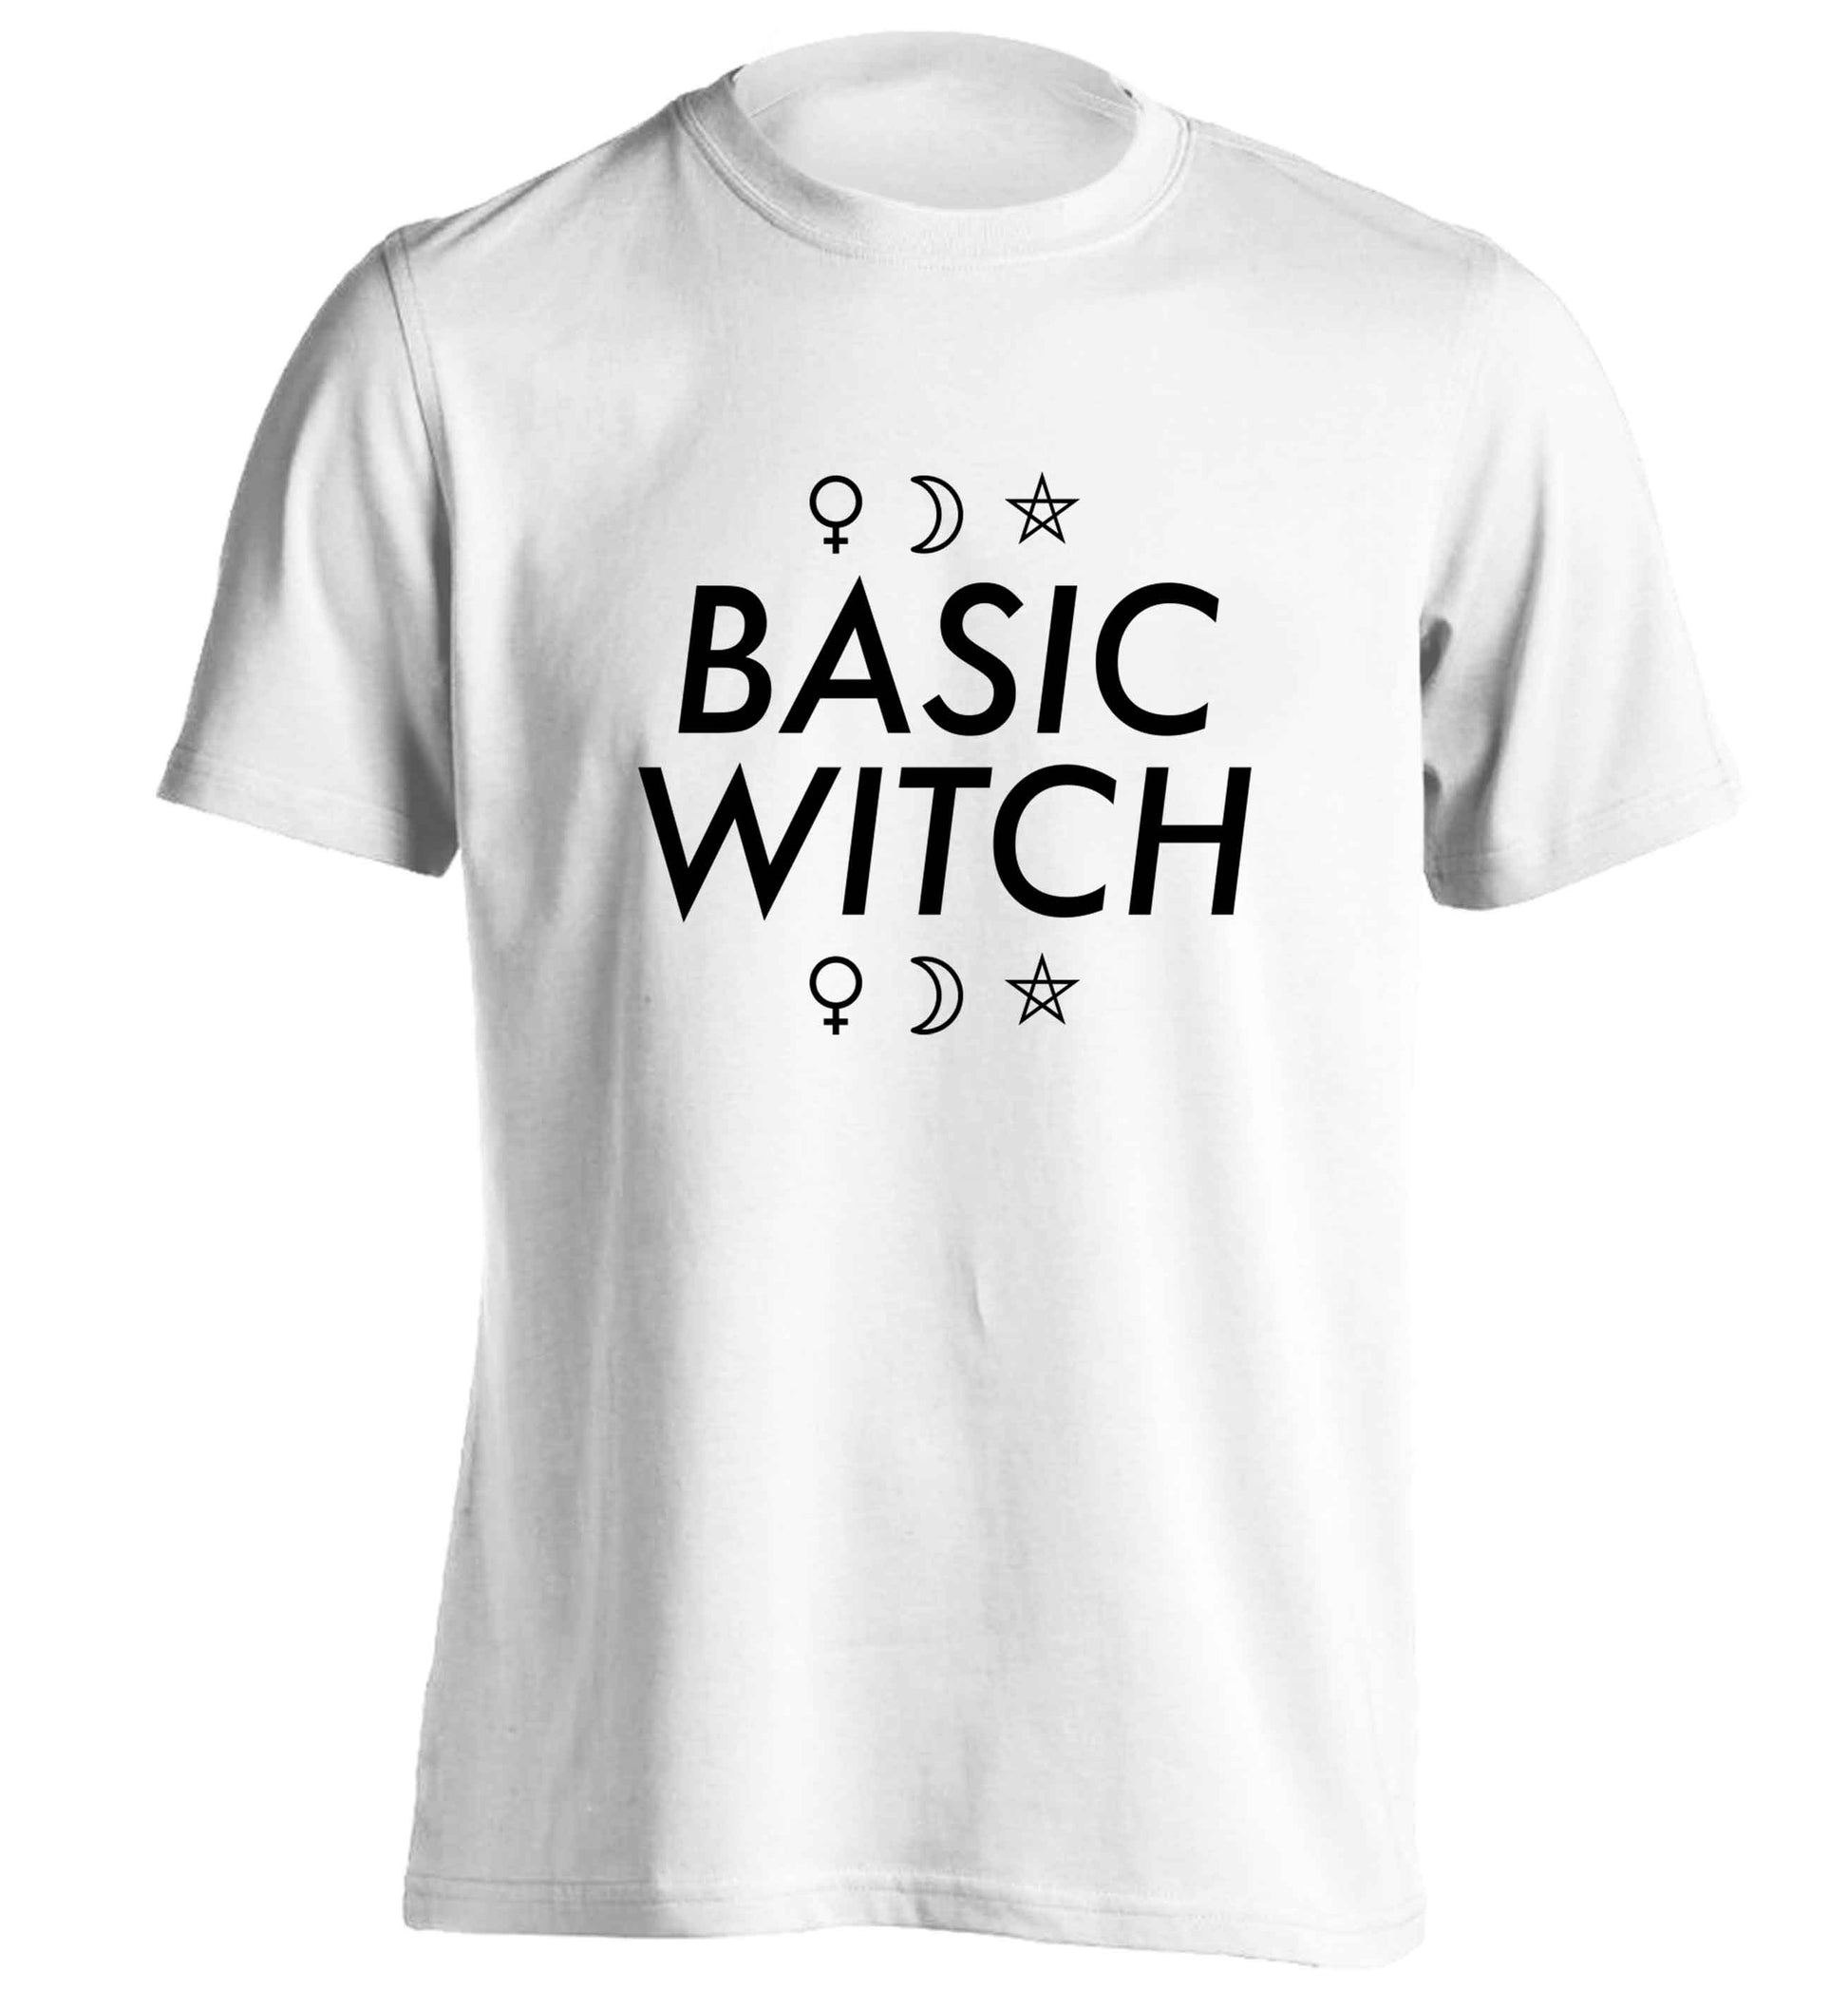 Basic witch 1 adults unisex white Tshirt 2XL